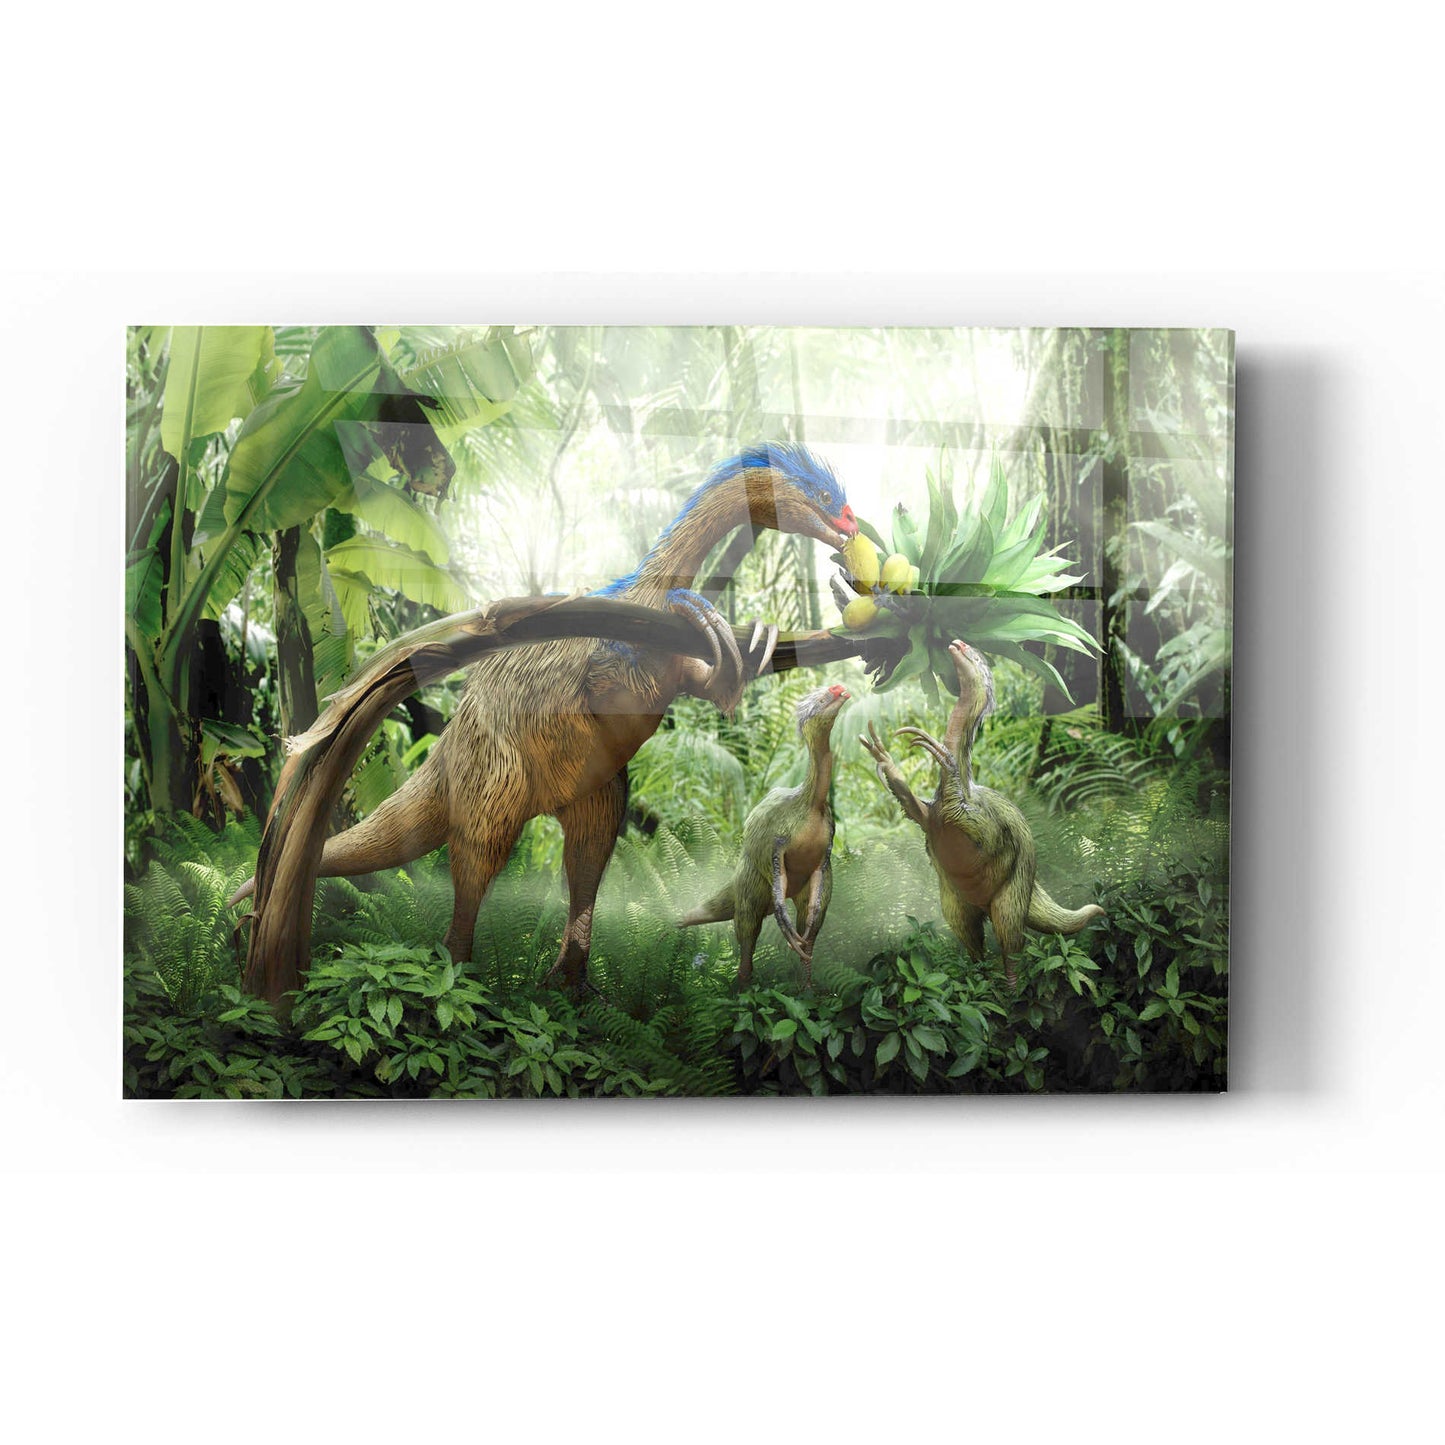 Epic Art 'Therizinosaurus' Acrylic Glass Wall Art,16x24